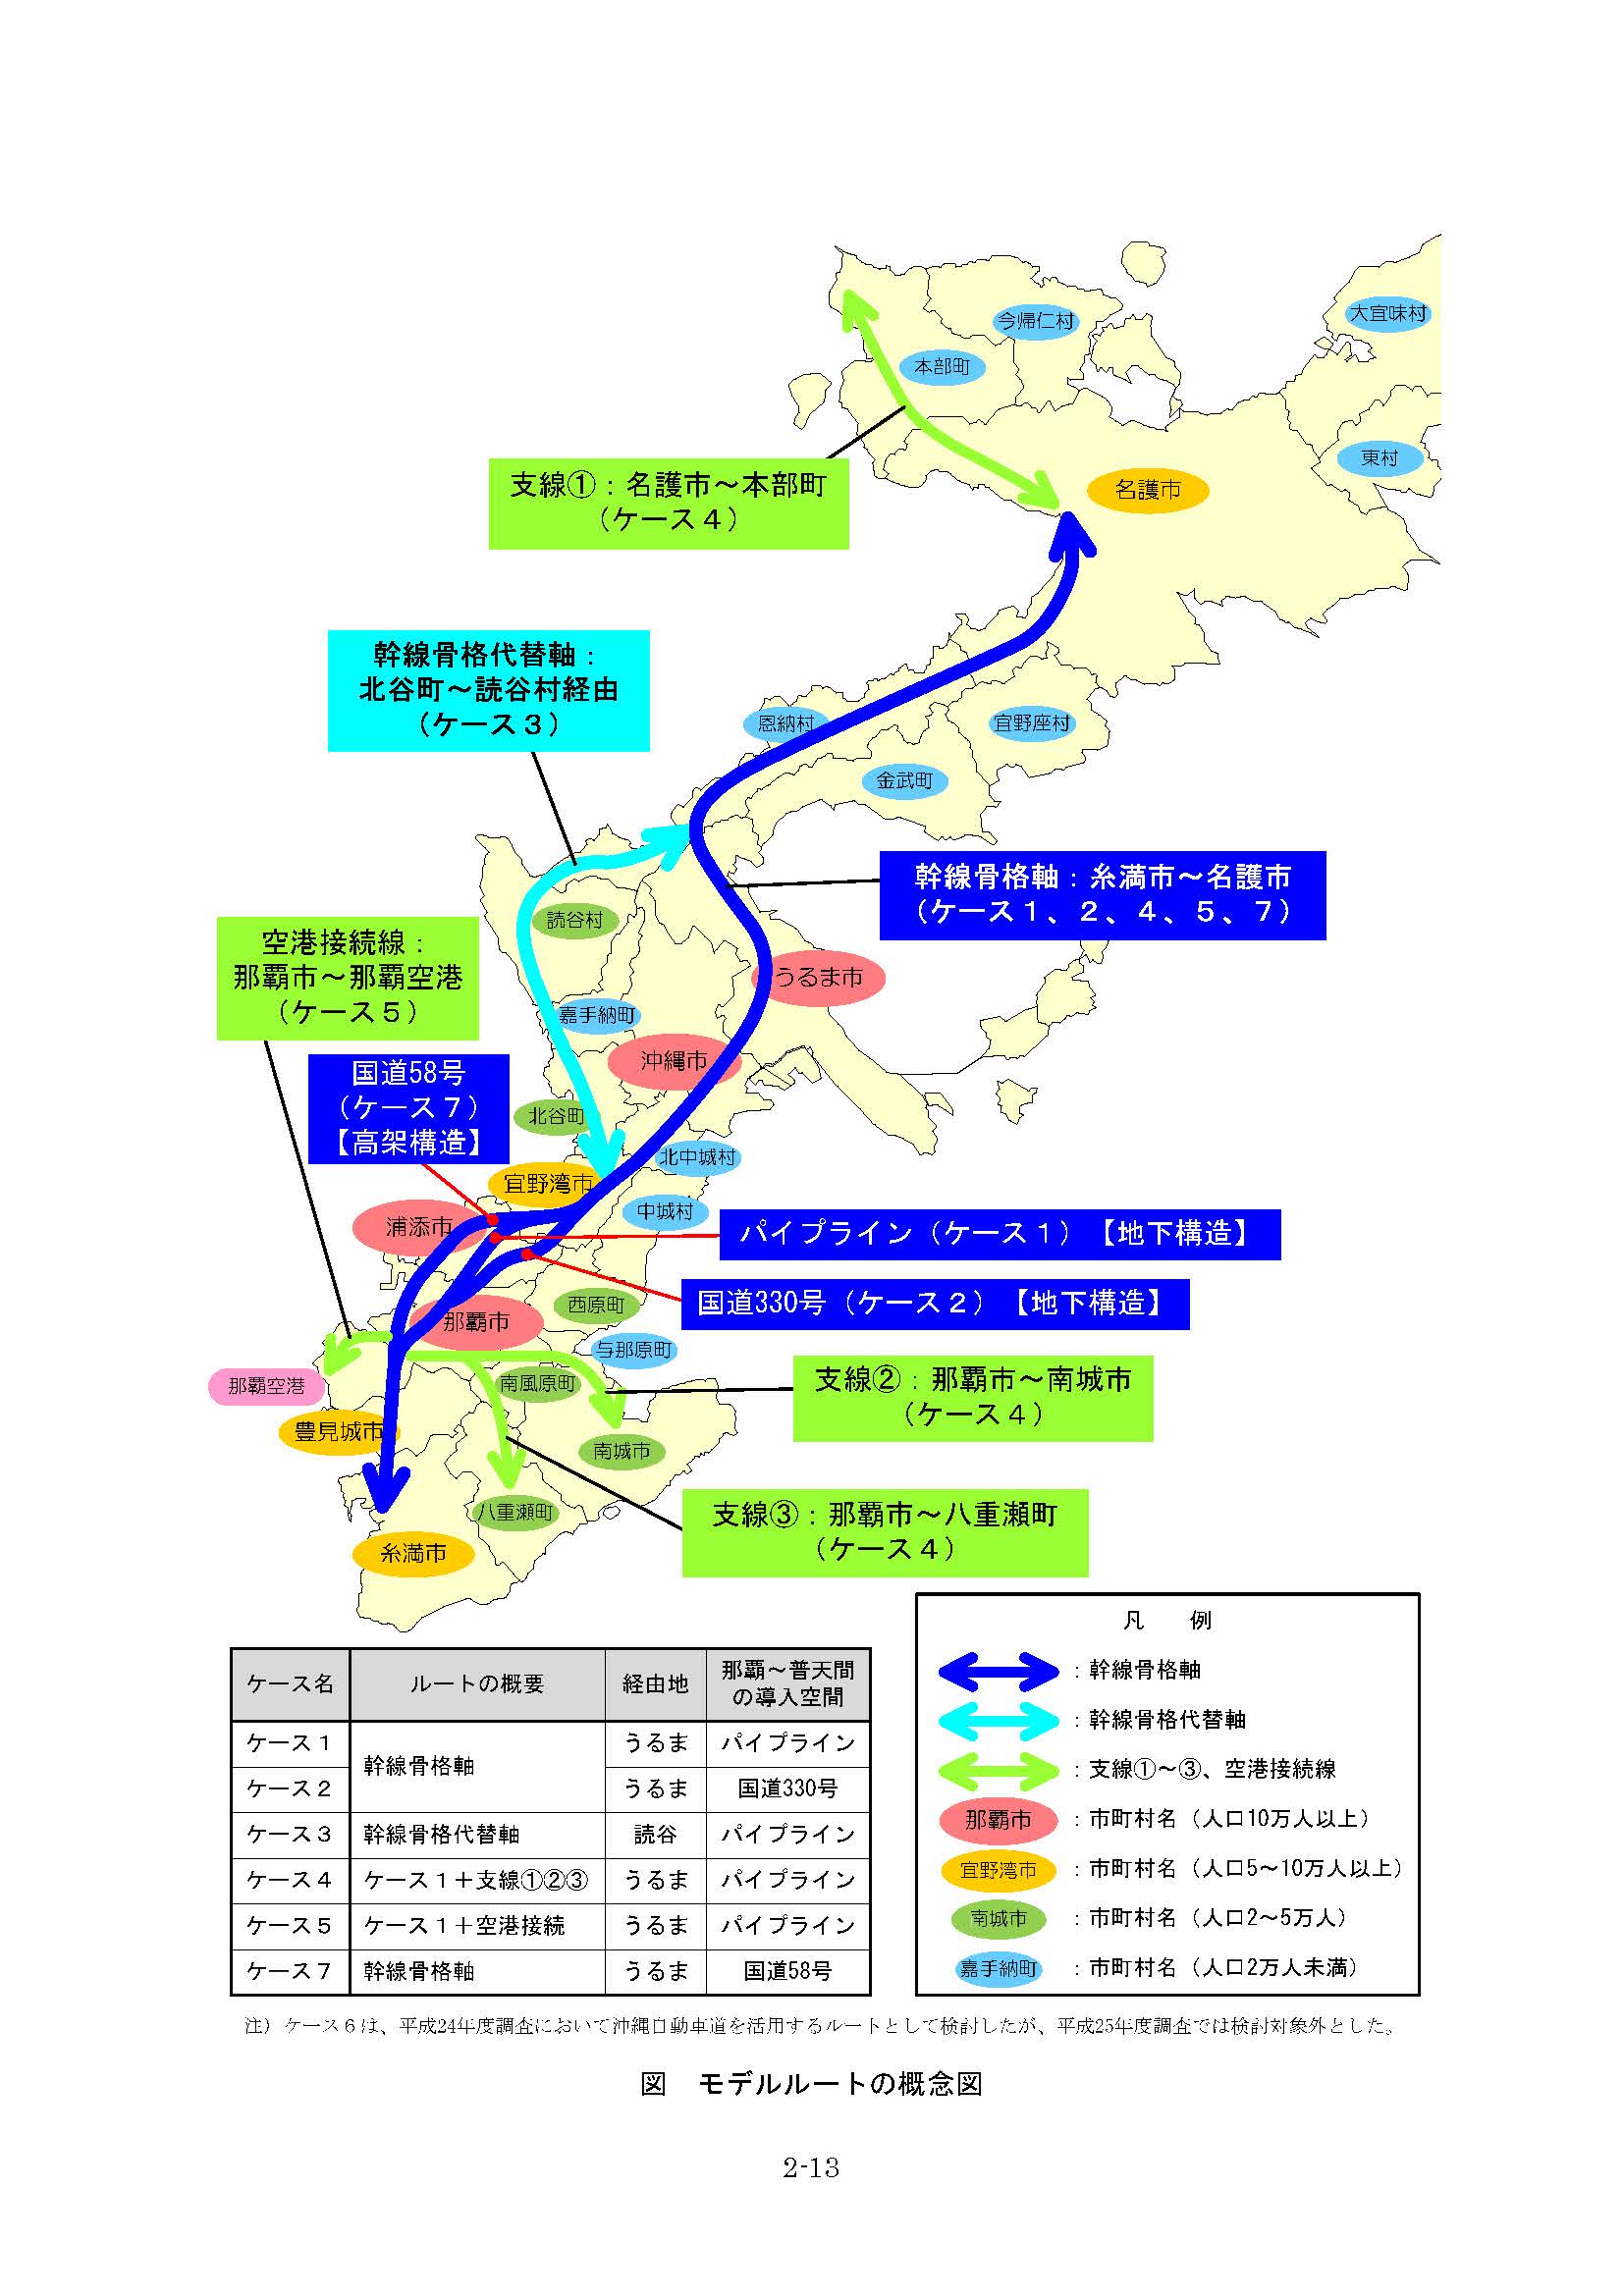 沖縄県 普通鉄道 モデルルートの概念図